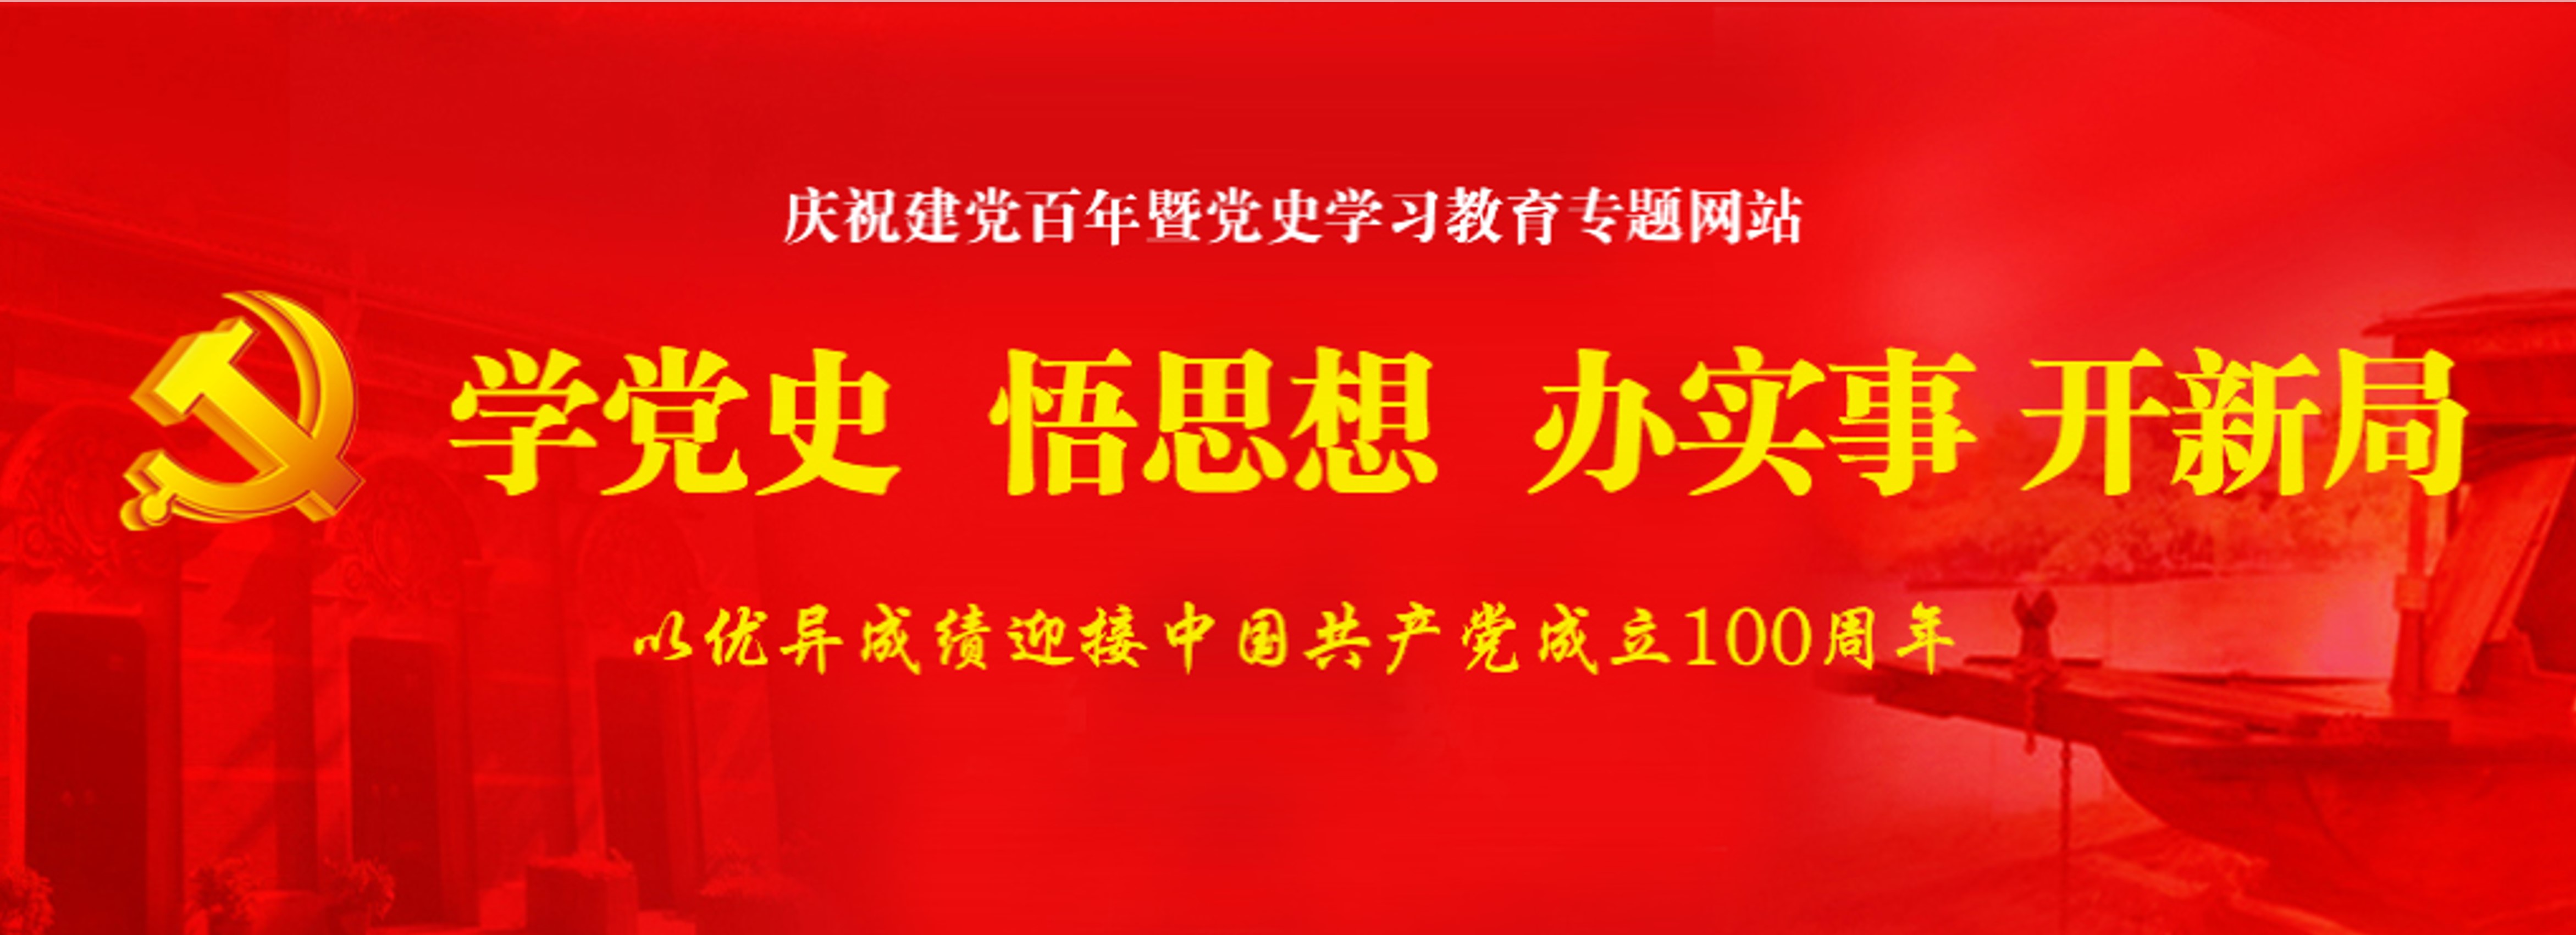 郑州航院庆祝建党百年暨党史学习教育专题网站